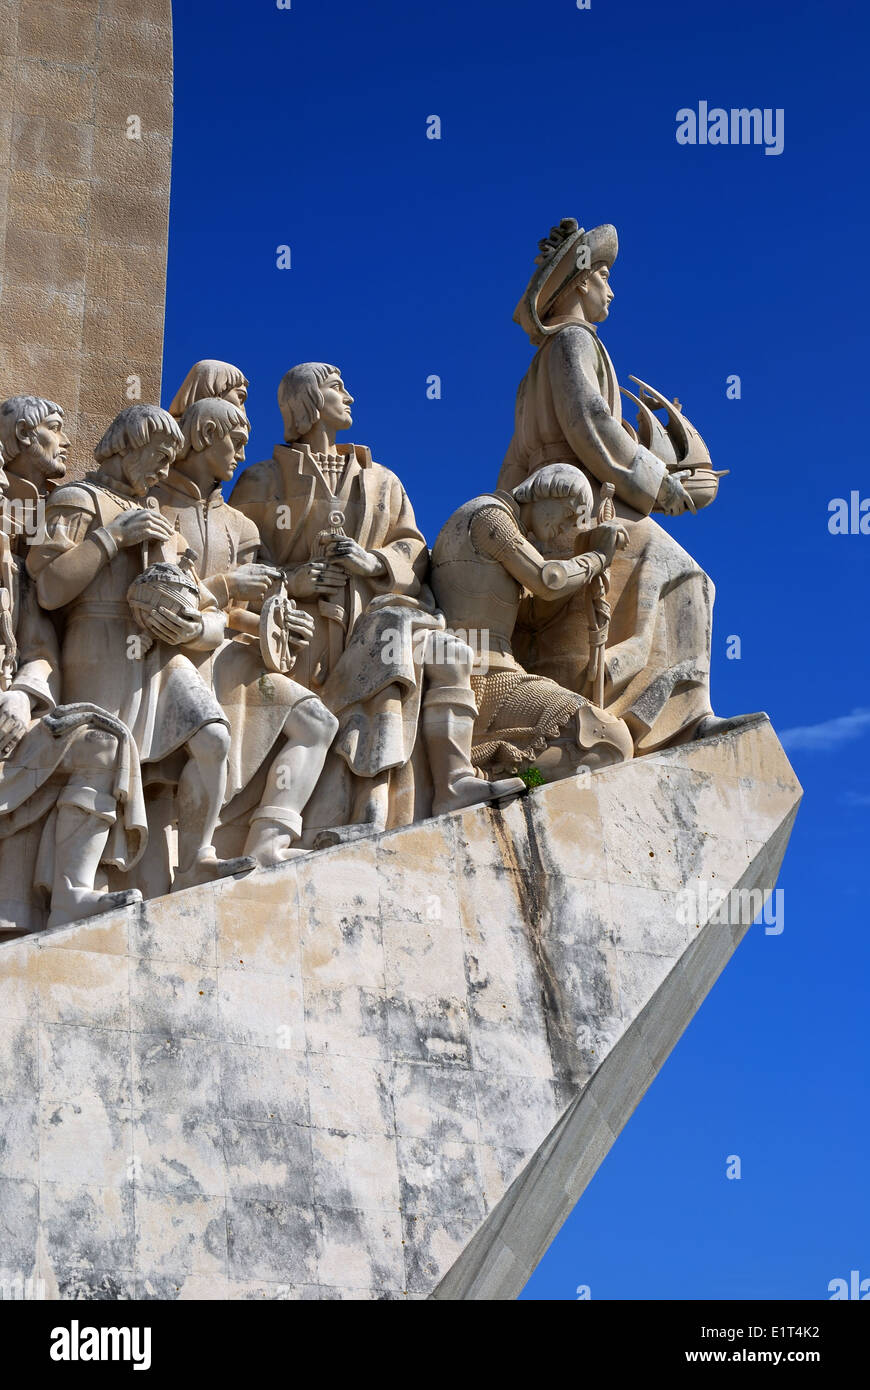 Padrao dos Descobrimentos (Monument des Découvertes), à Belém, Lisbonne (Portugal). Banque D'Images